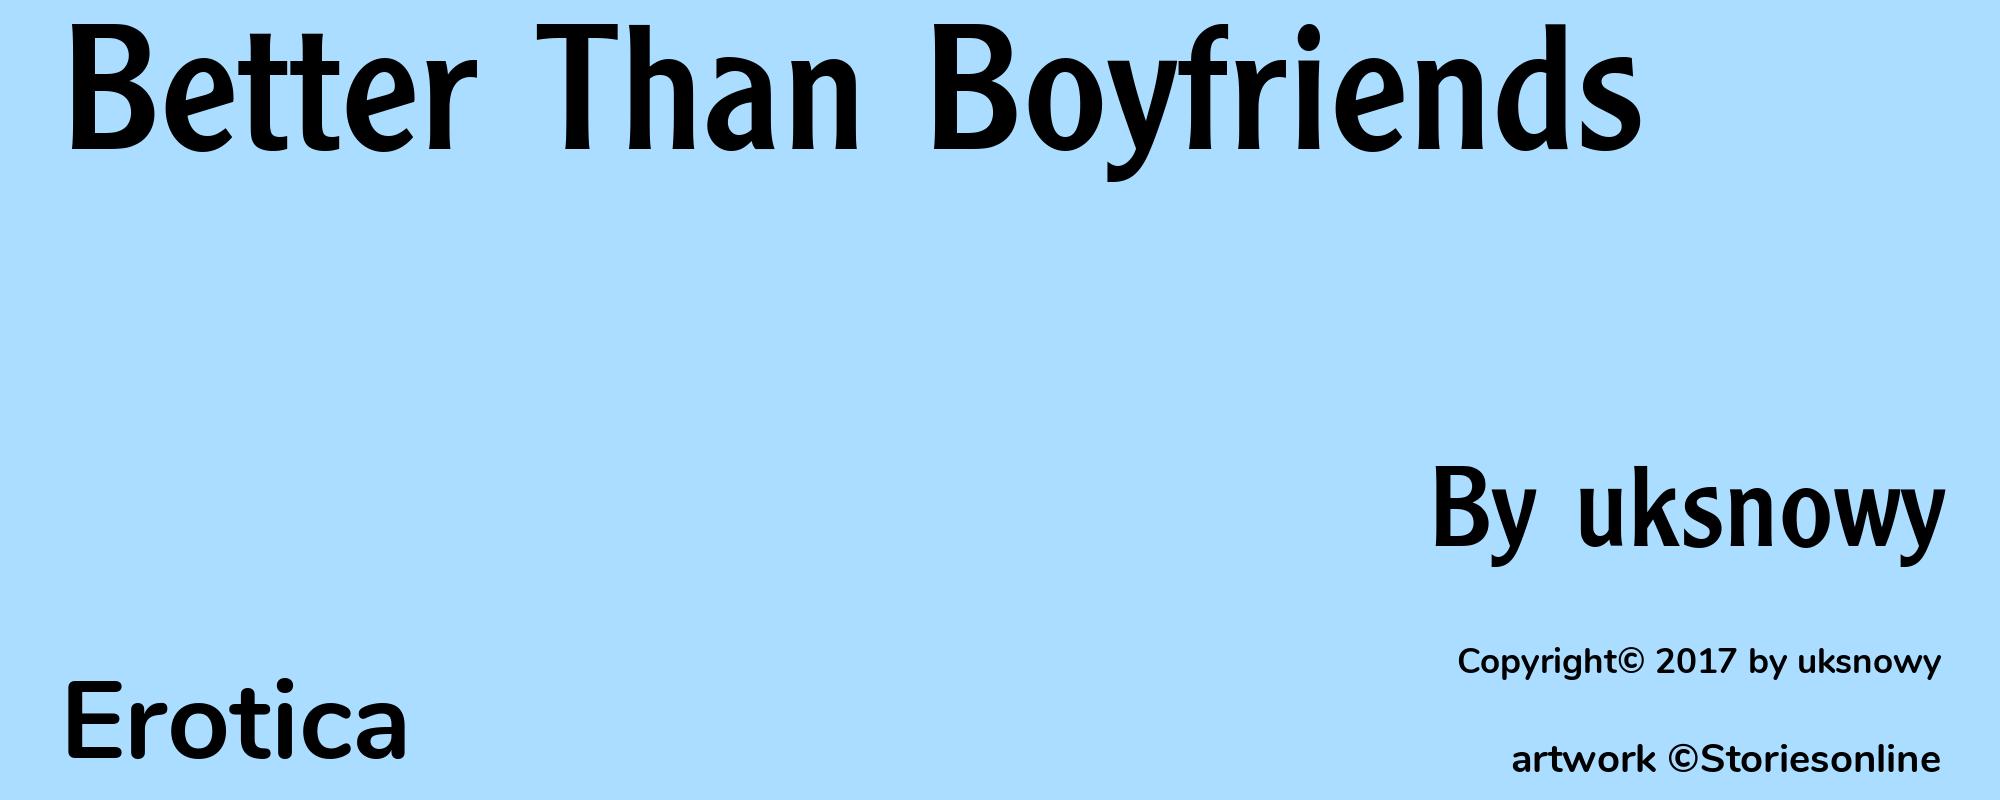 Better Than Boyfriends - Cover